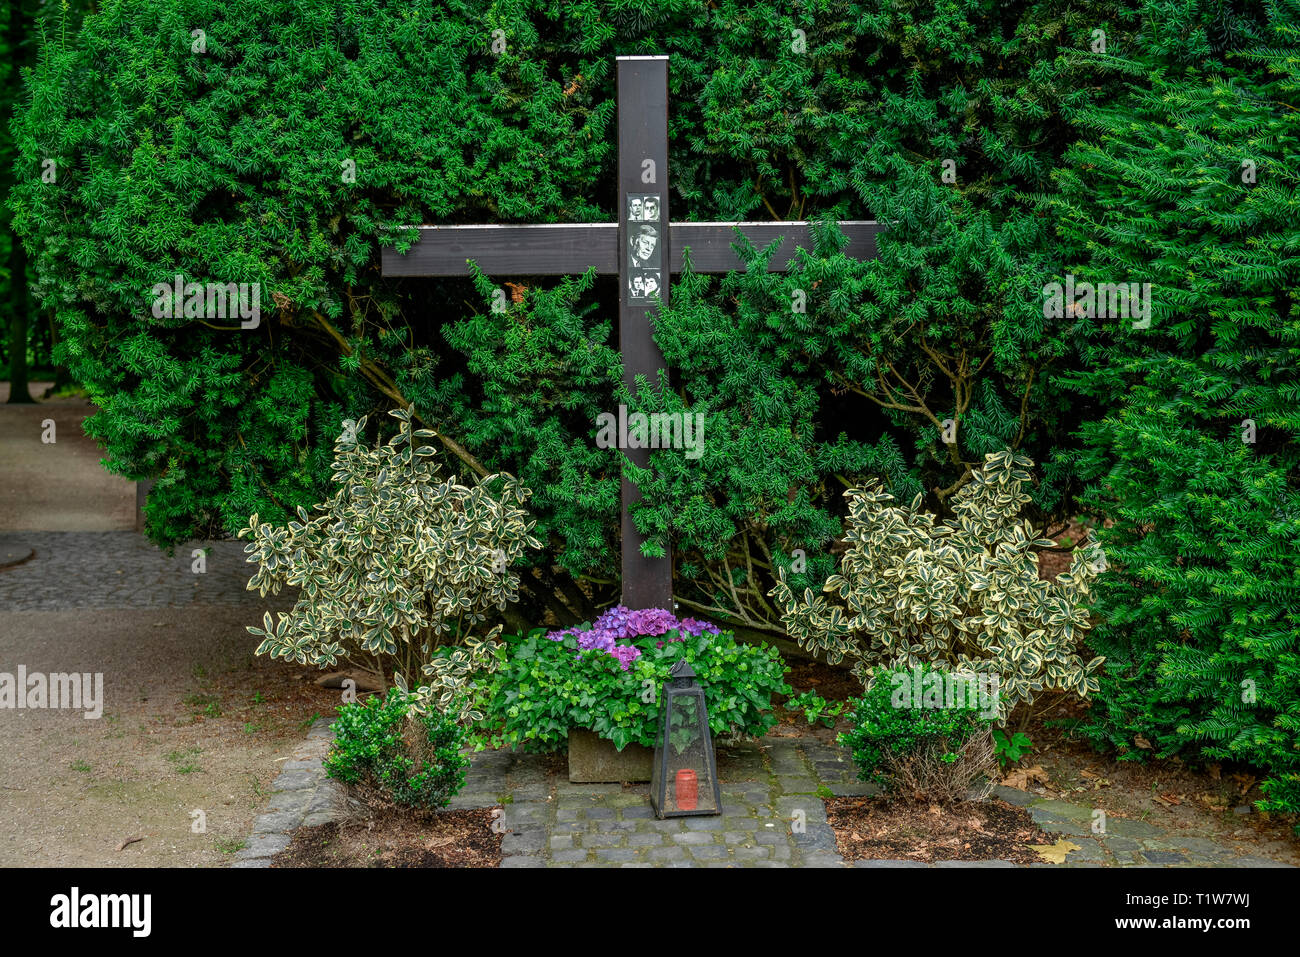 Kreuz, Gedenken, Anschlagsort Hanns Martin Schleyer, Vincenz-Statz-Strasse, Braunsfeld, Koeln, Nordrhein-Westfalen, Deutschland Stock Photo